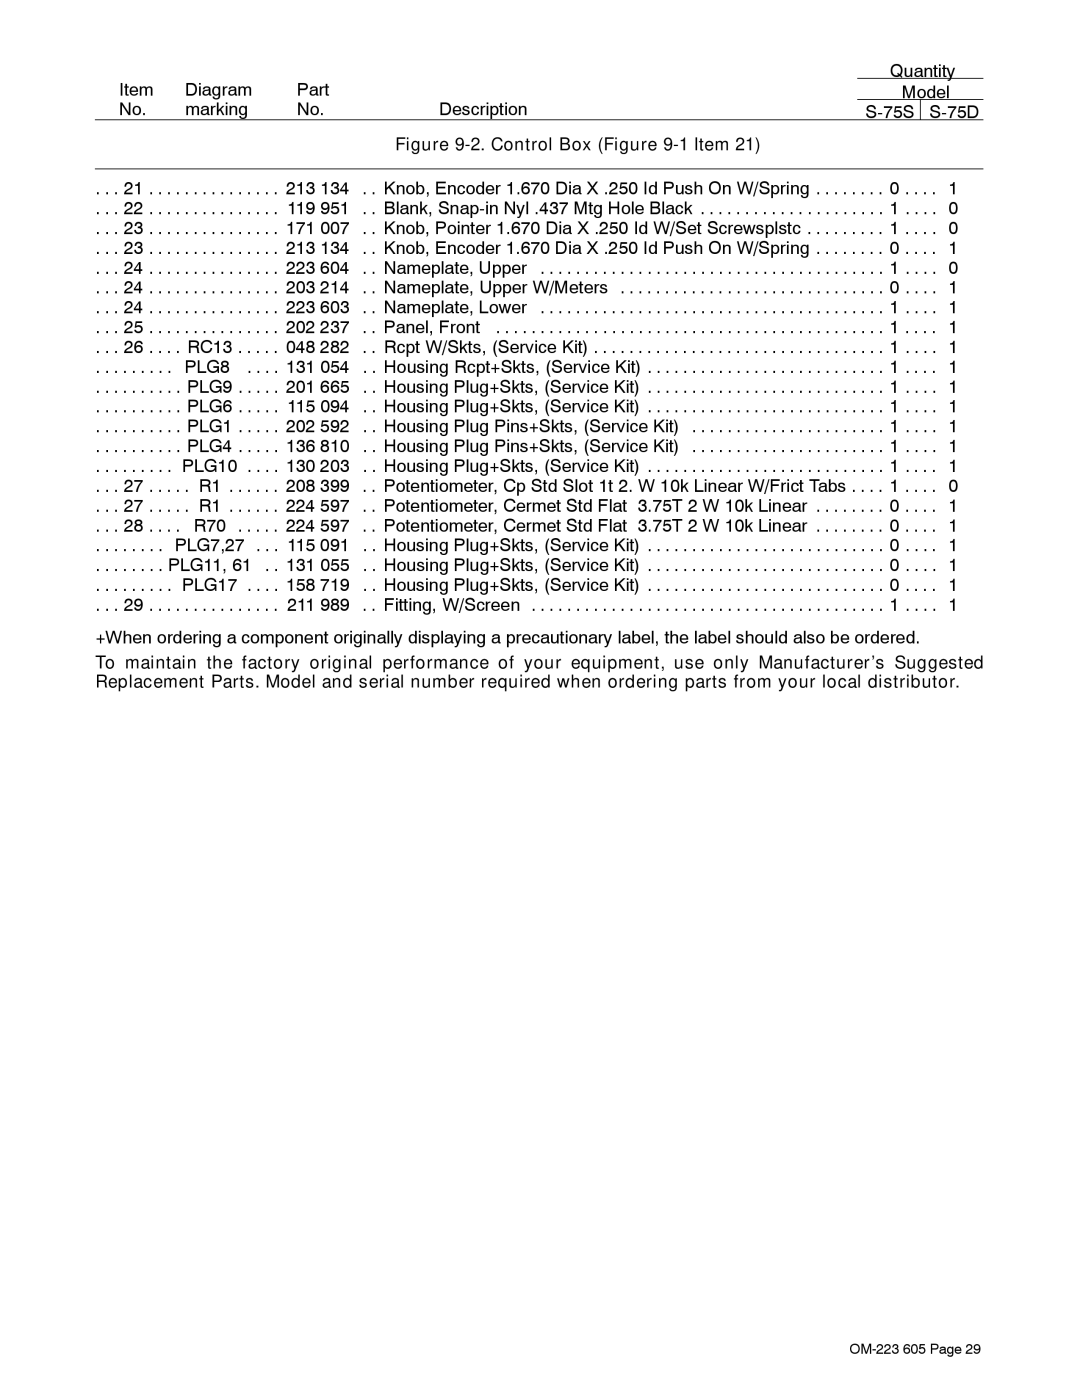 Miller Electric S-75S, S-75D manual Diagram Part Quantity Model Marking Description 75S 75D 